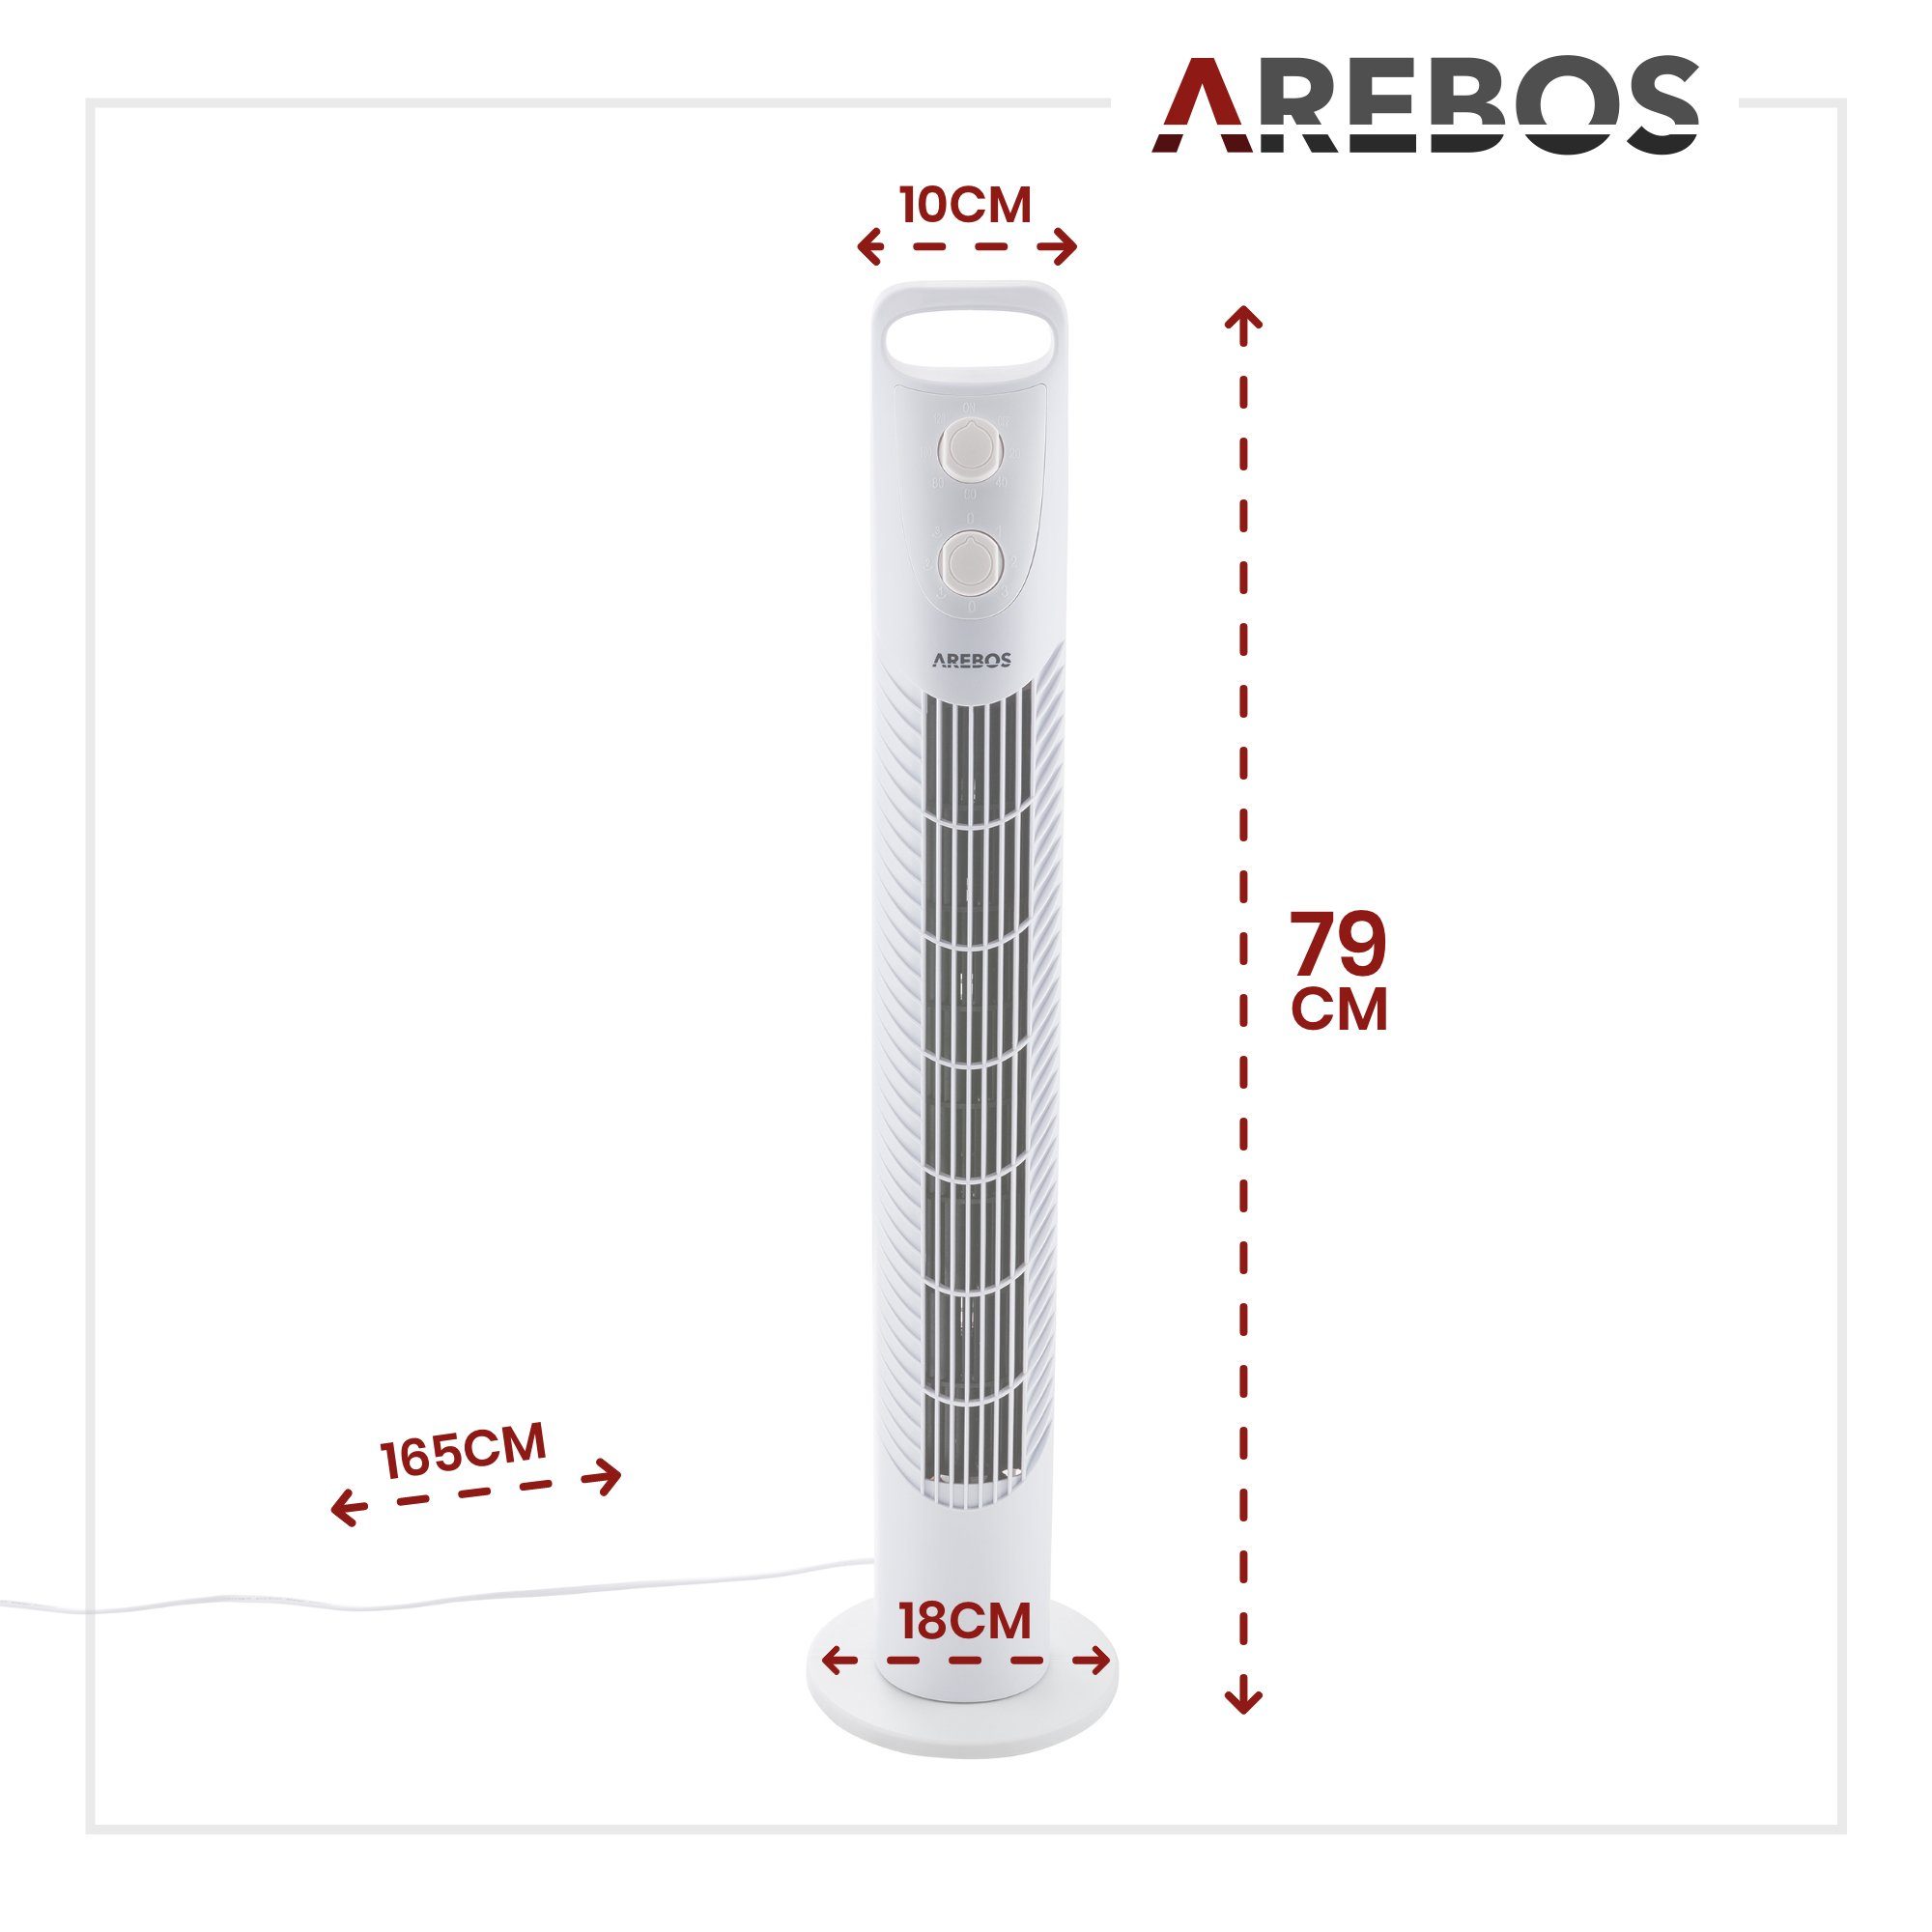 Arebos Turmventilator mit Timer, Weiß 75°-Oszillation, 40 cm 78,00 Watt, Durchmesser